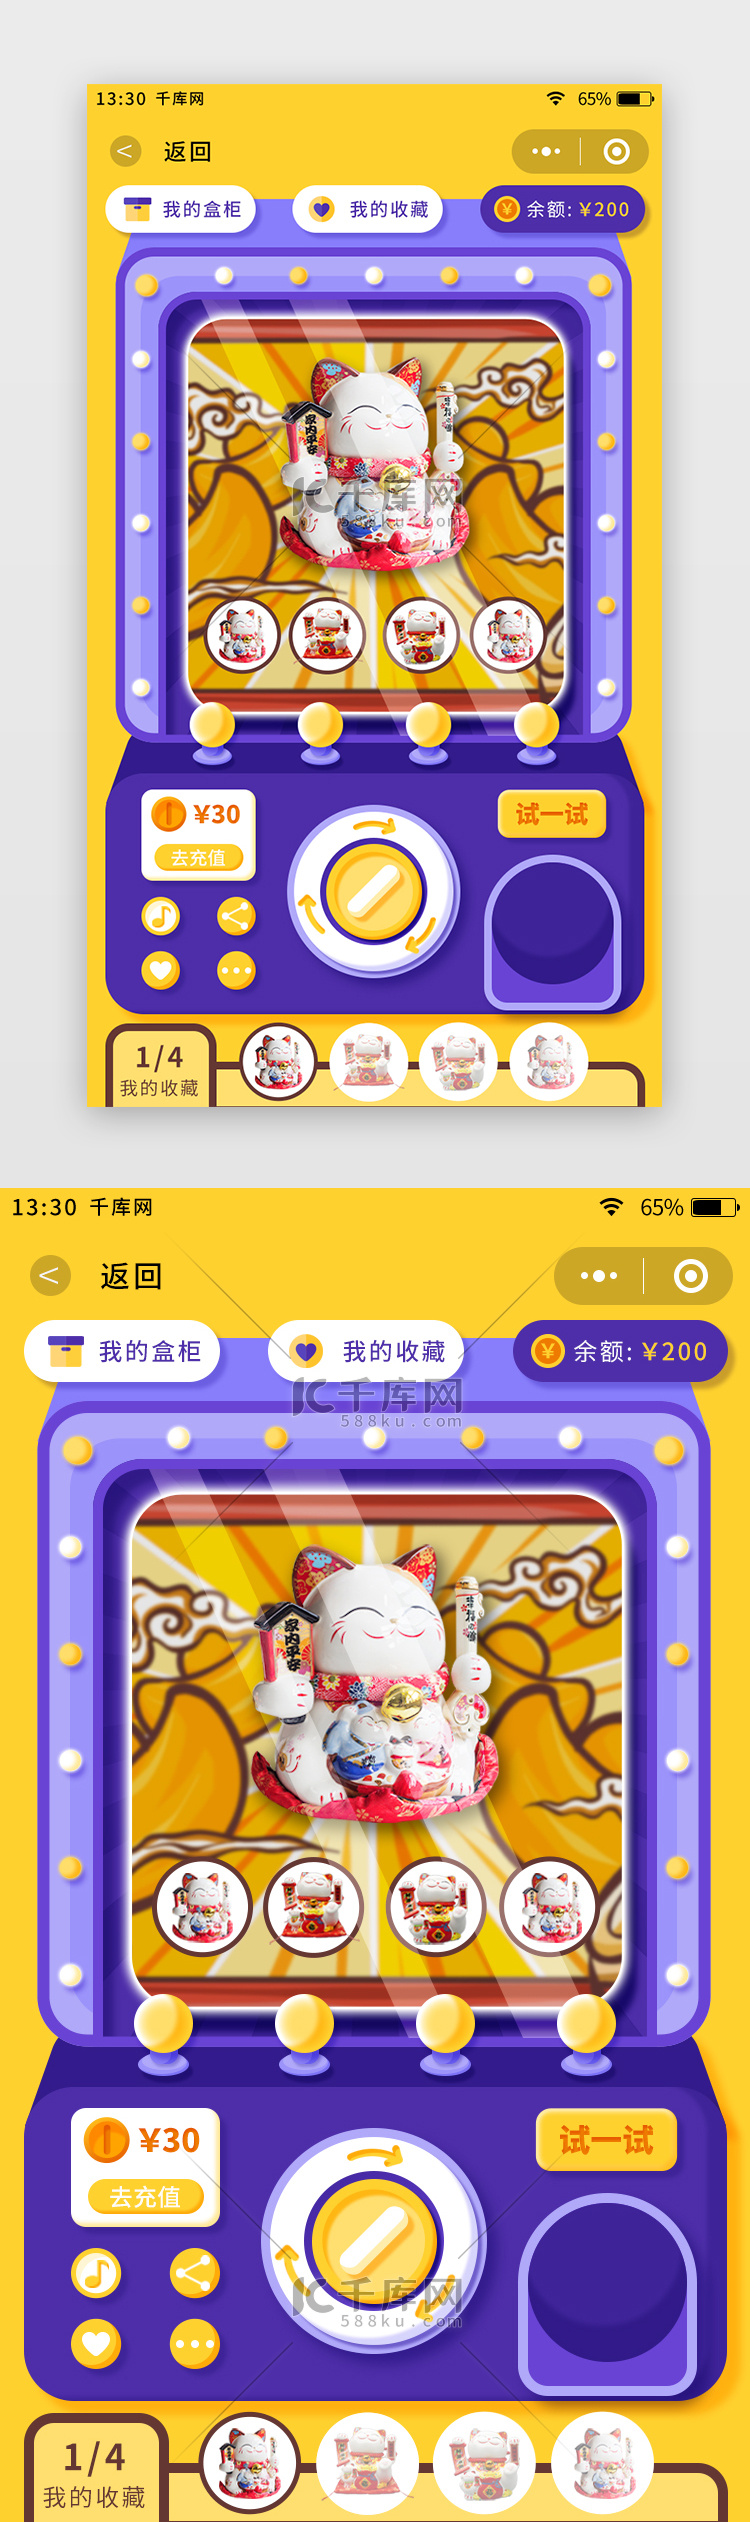 黄紫色扁平风盲盒商城app扭蛋购买页